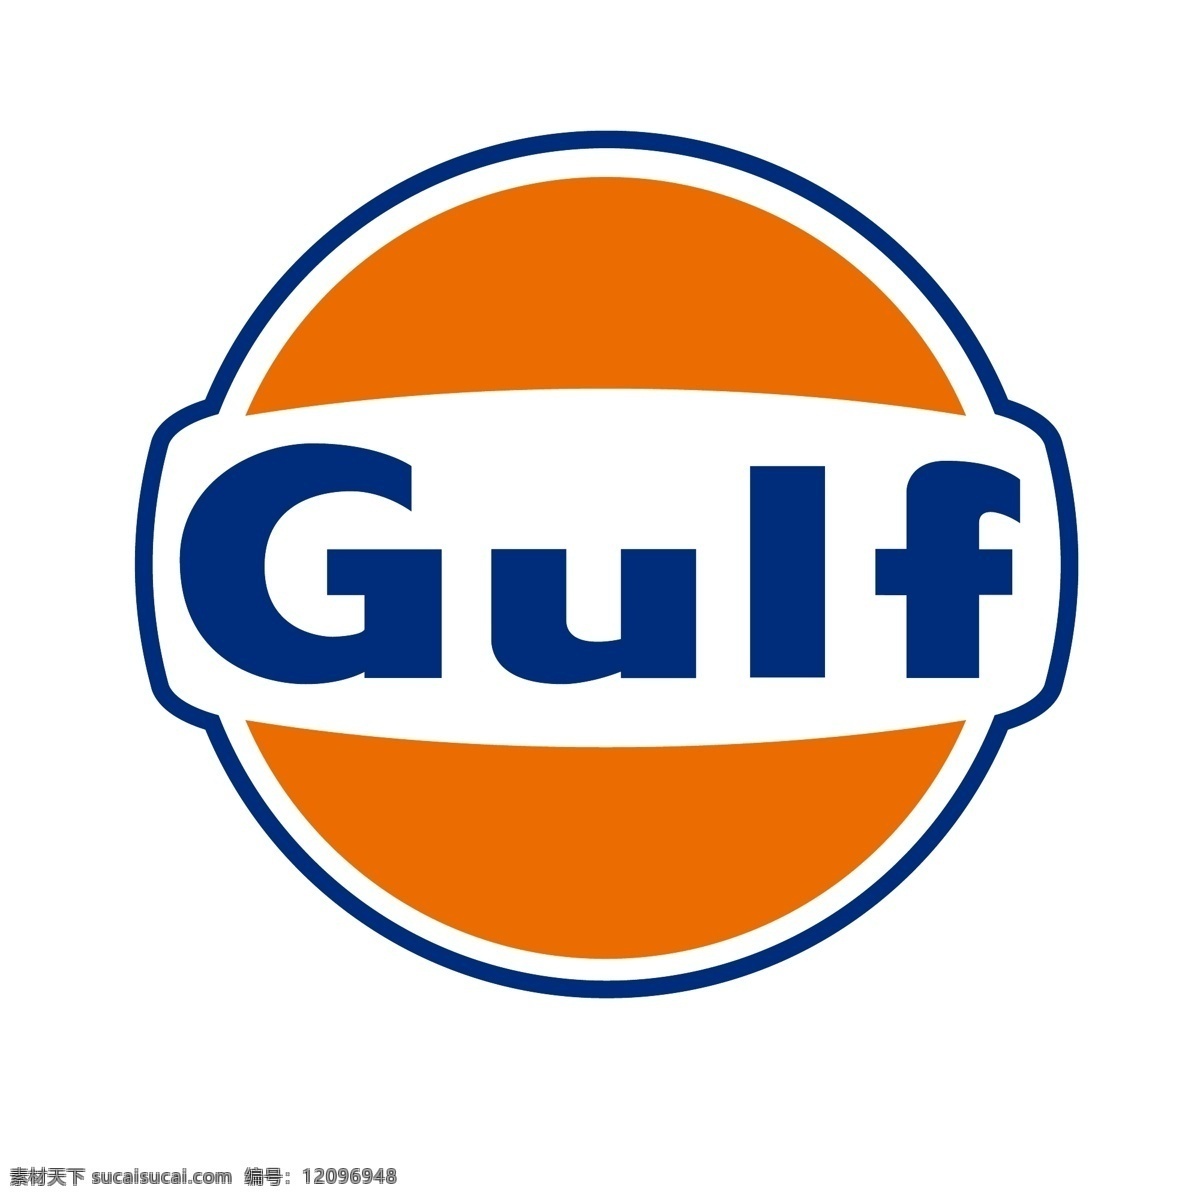 海湾 gulflogo 橙蓝色 logo 简约 设计素材